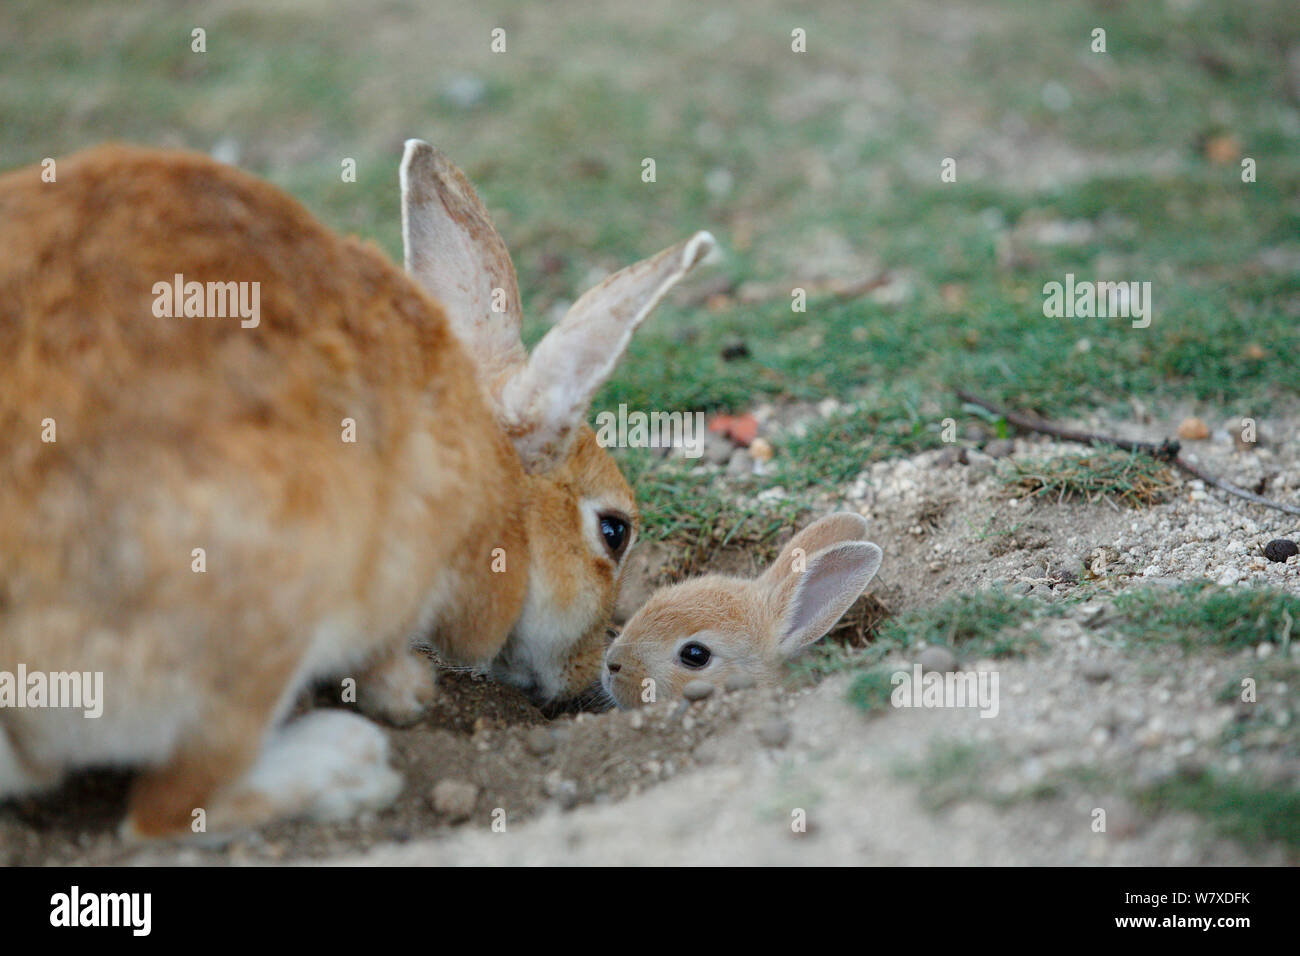 Les sauvages lapin (Oryctolagus cuniculus) mère bébé souhaits coller la tête de burrow, Okunojima Island, également connu sous le nom de Rabbit Island, Hiroshima, Japon. Banque D'Images